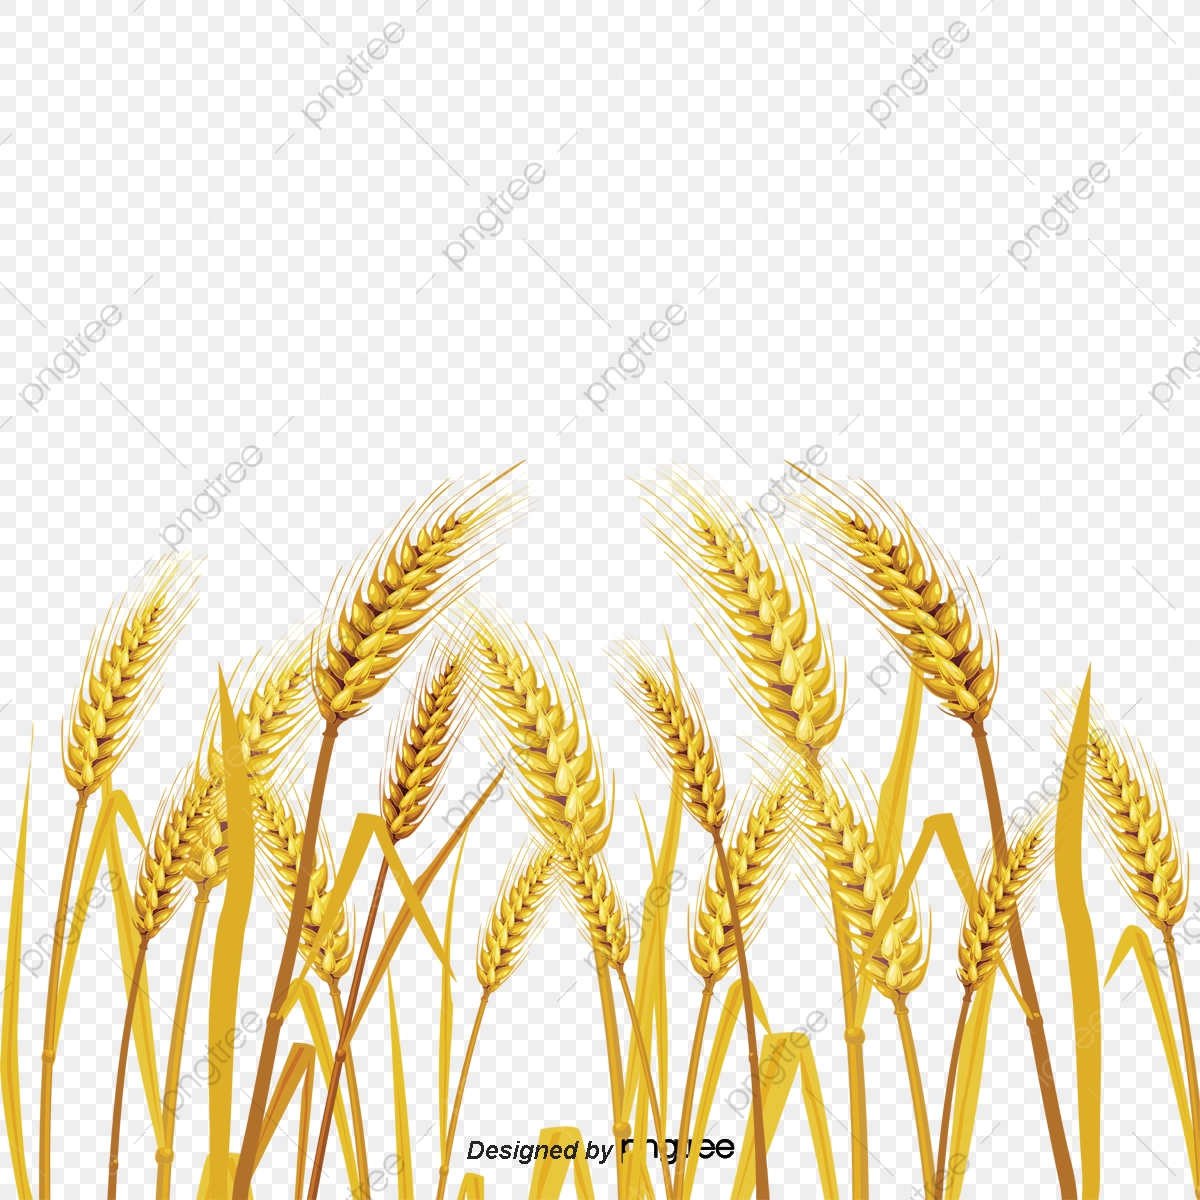 crops clipart wheat feild